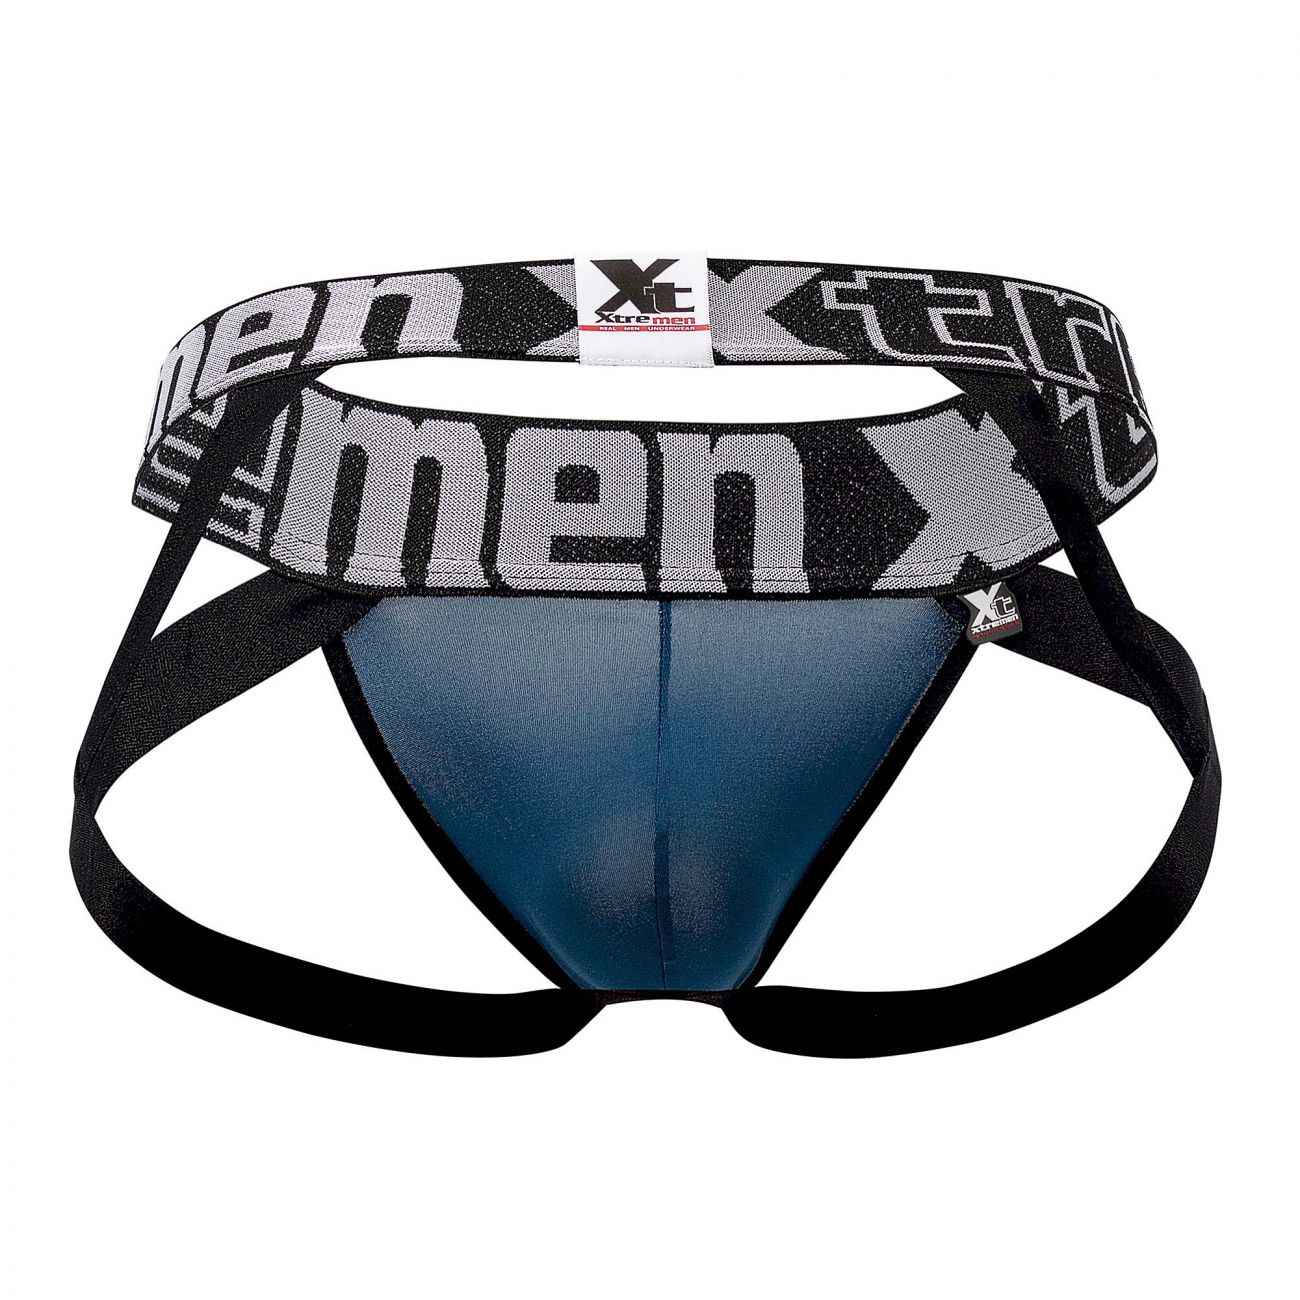 Mens Underwear: Xtremen 91054 Double Strap Jockstrap | eBay